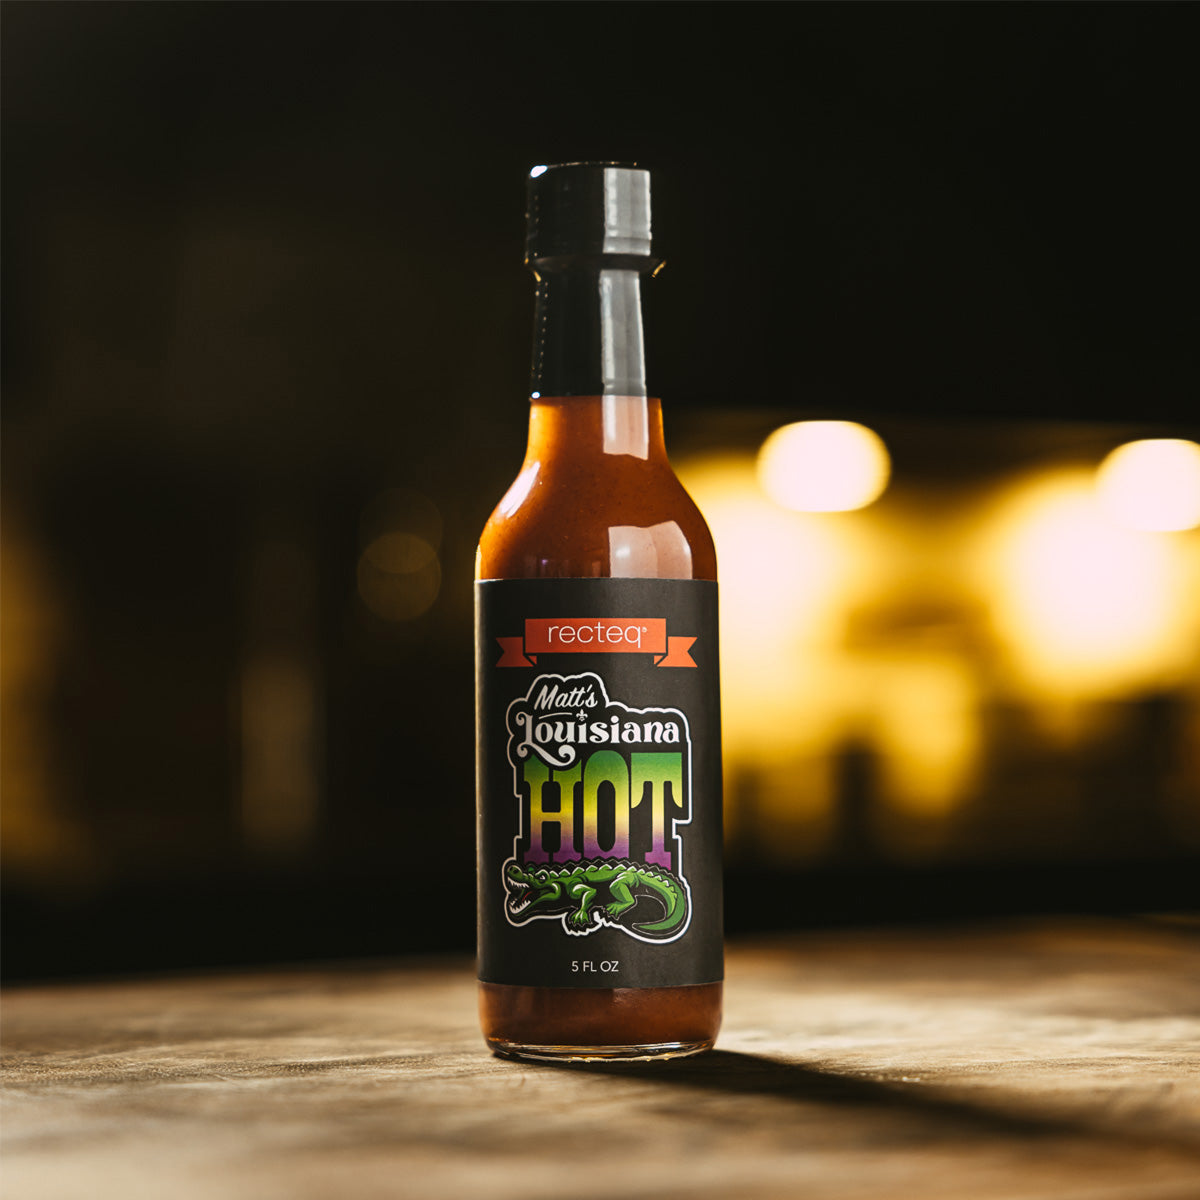 Matt’s Louisiana Hot Sauce